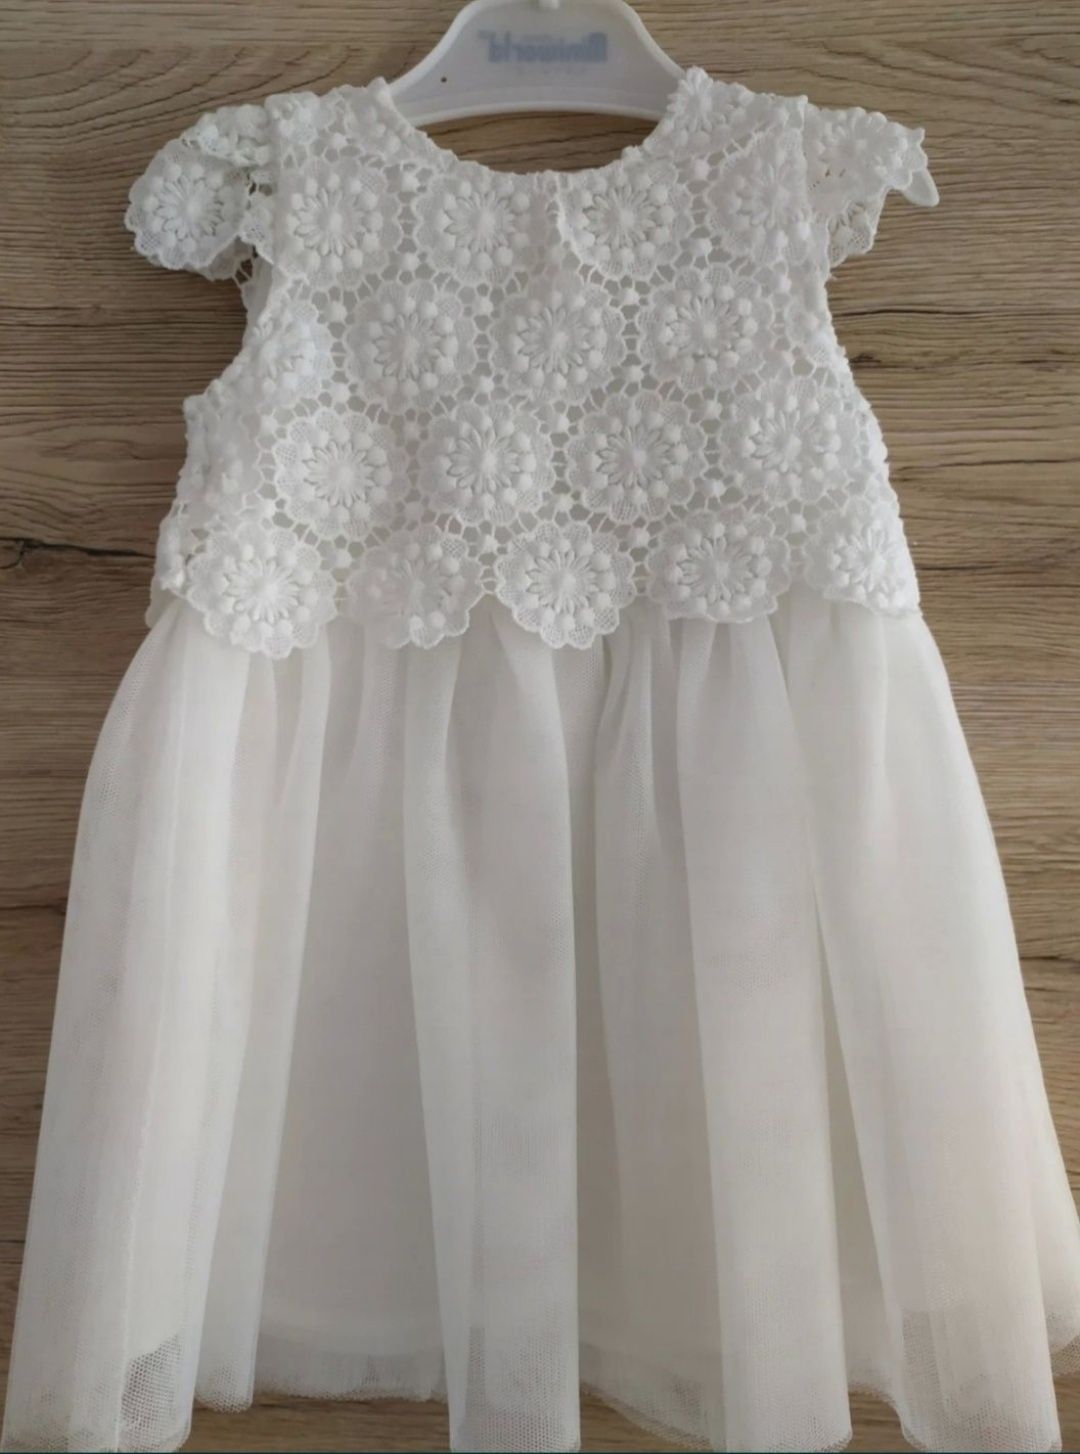 Biała sukienka dla dziewczynki chrzest, wesele, uroczystość 74 tiul, k